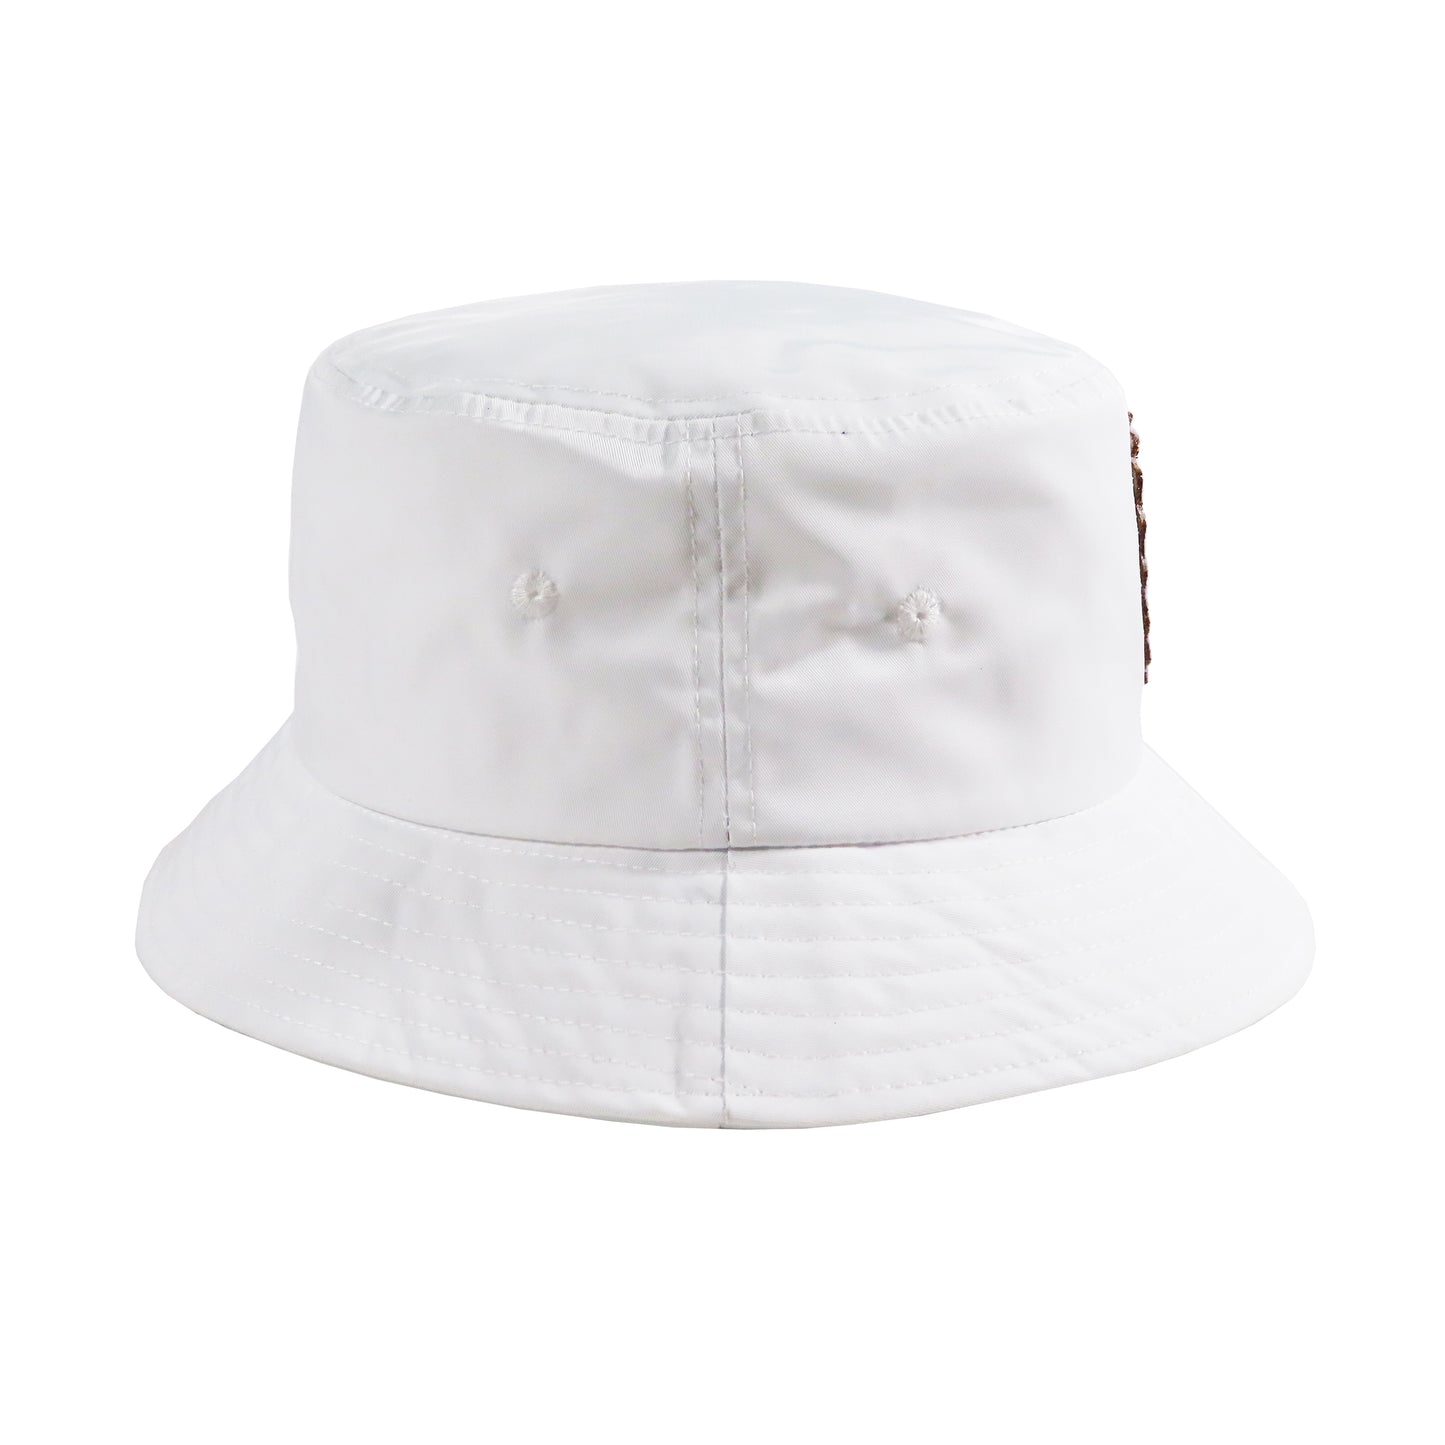 Pinner's Golf - Single Strap Bag Nylon Bucket Hat (White)